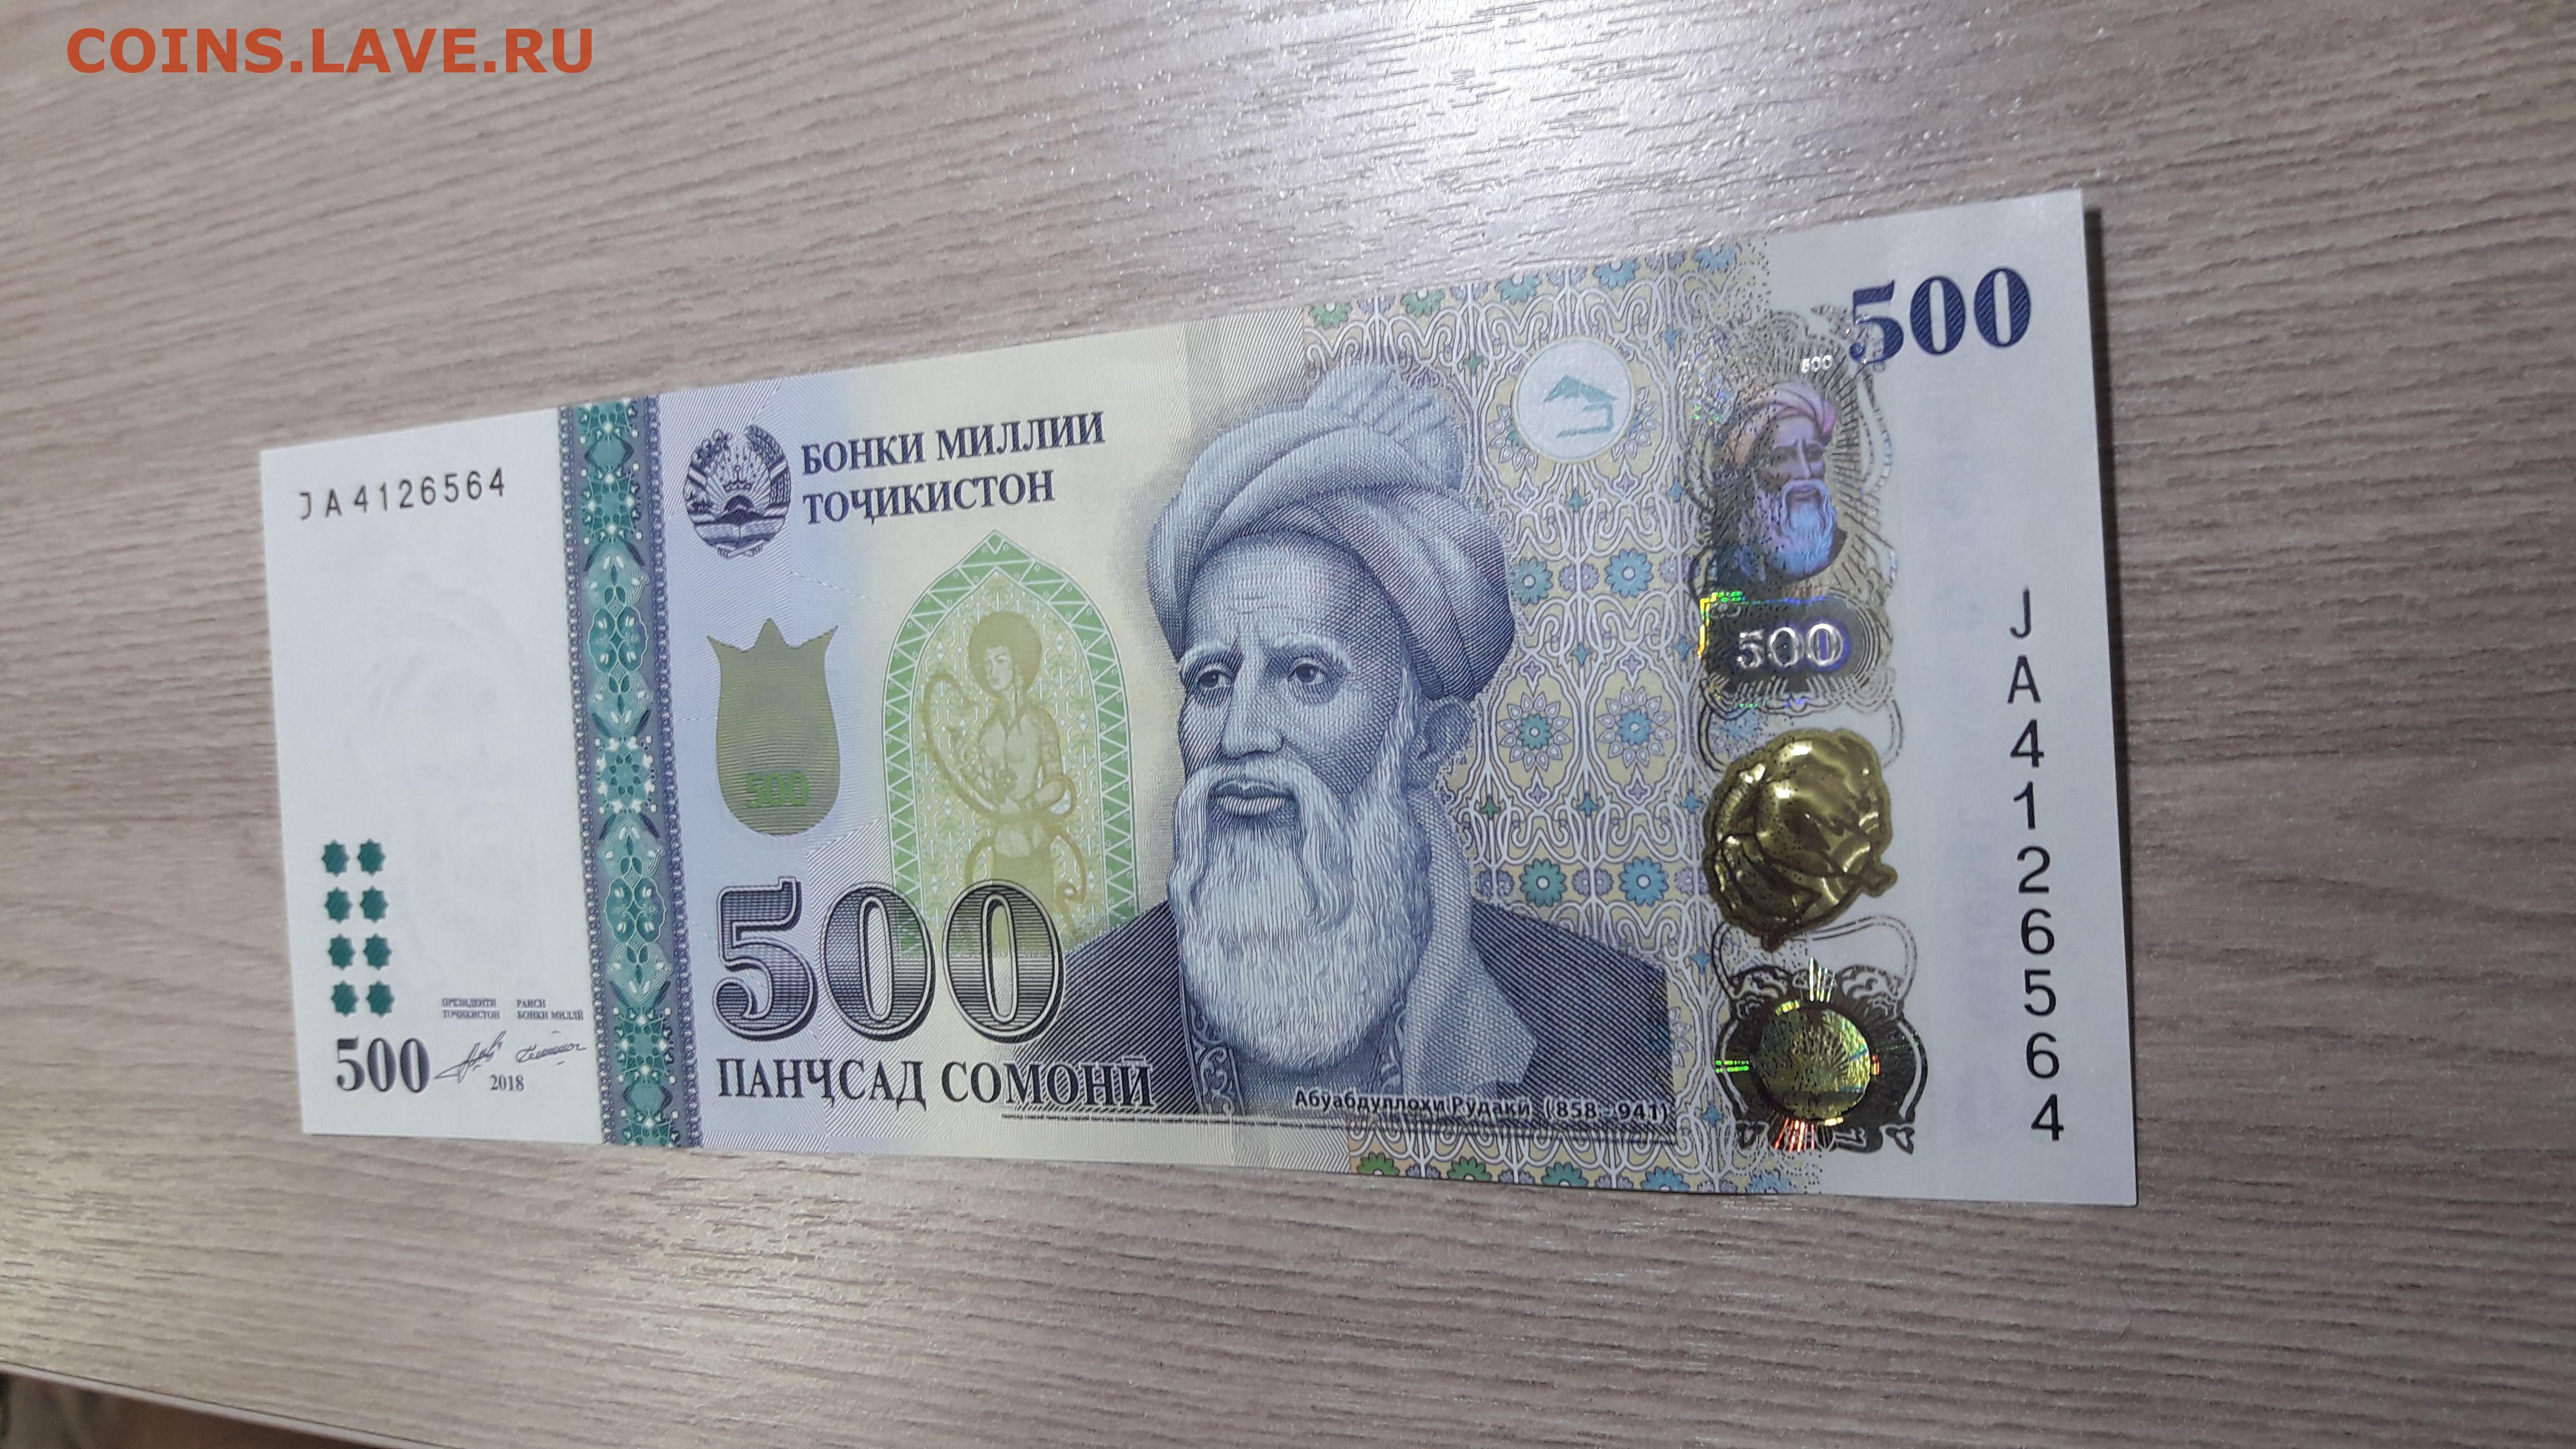 500 сомони в рублях на сегодня. Таджикский купюры 500 Сомони. Деньги Таджикистана 500 Сомони. 1000 Сомона. Купюра 500 Сомони.